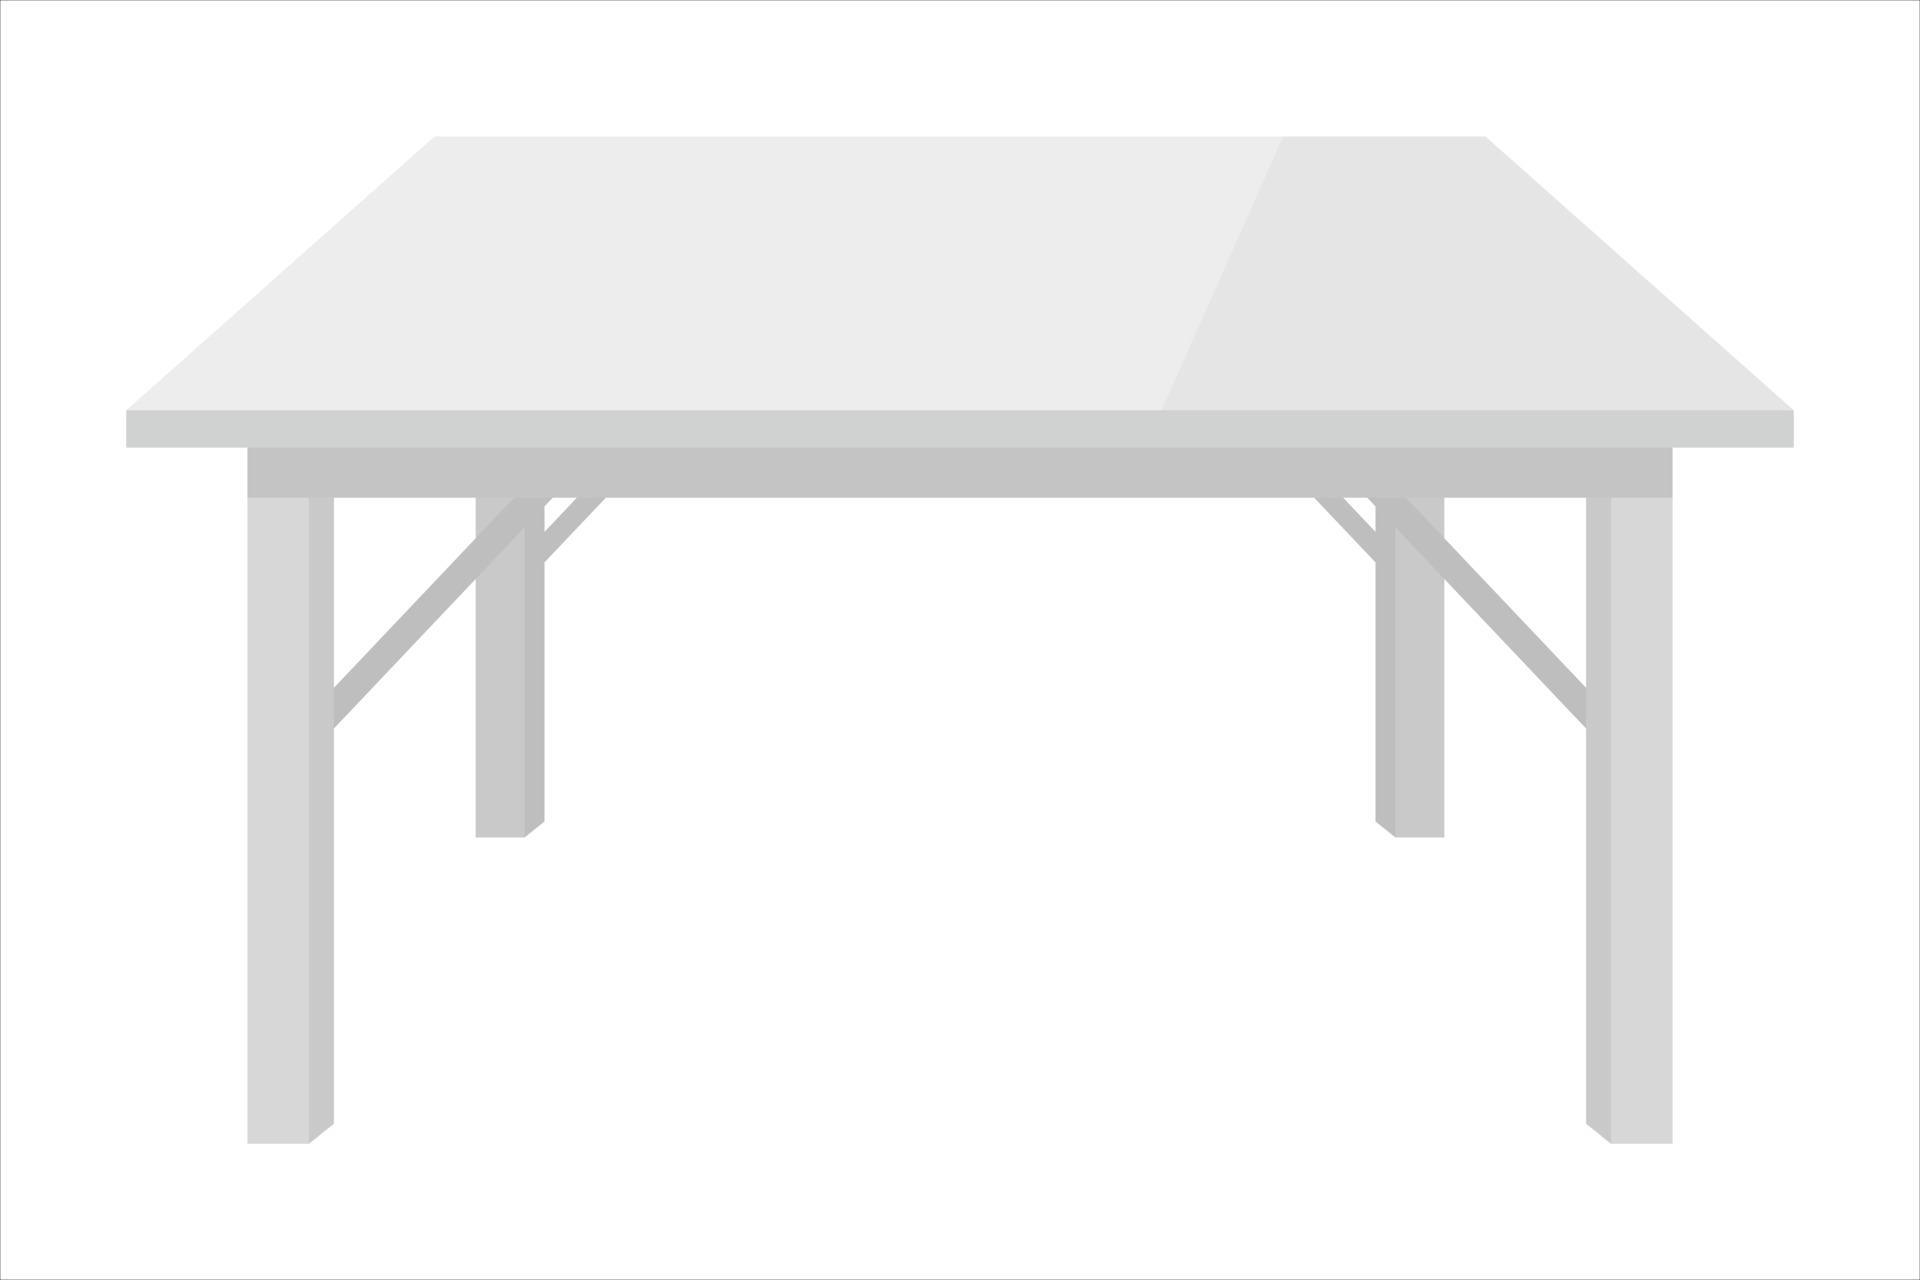 Schouderophalend bon Verbonden lege witte plastic tafel 2454657 - Download Free Vectors, Vector Bestanden,  Ontwerpen Templates